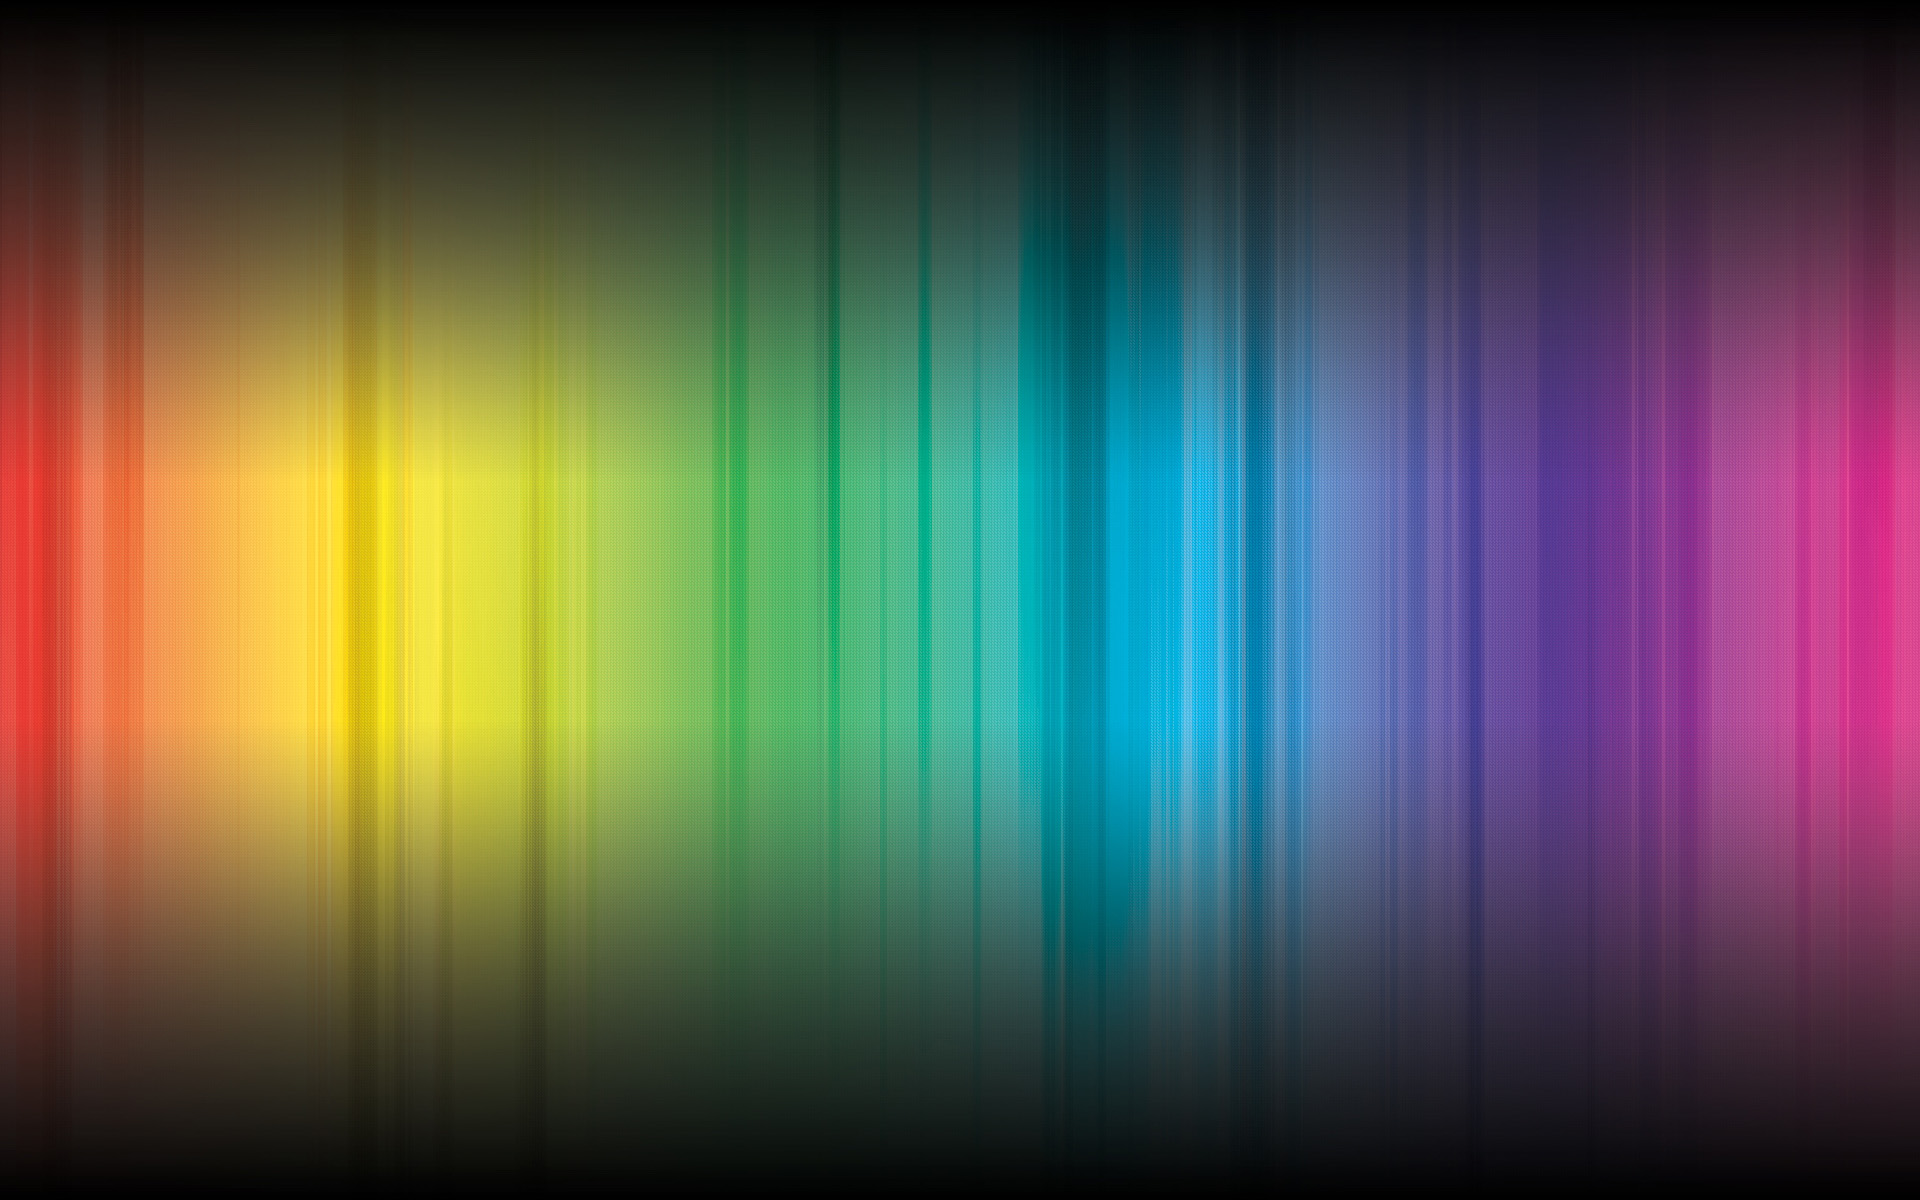 壁纸1920x1200抽象背景 彩虹之色 炫彩色谱 抽象视觉壁纸壁纸 抽象背景 彩虹之色壁纸 抽象背景 彩虹之色图片 抽象背景 彩虹之色素材 插画壁纸 插画图库 插画图片素材桌面壁纸